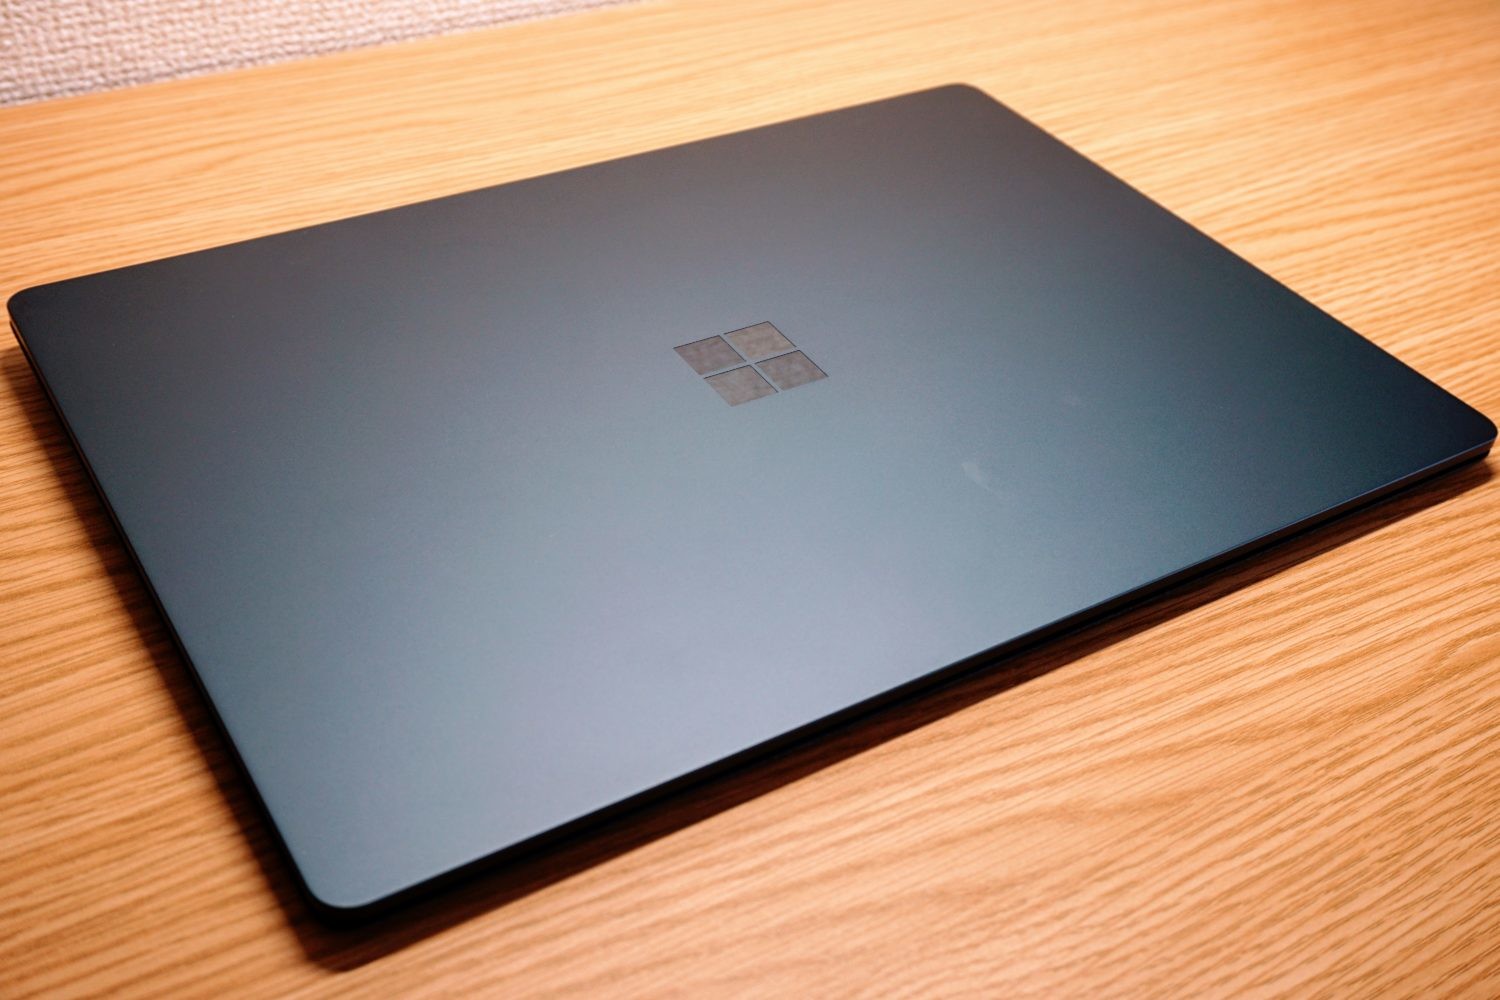 【レビュー】Surface Goが発表された今だからこそSurface Laptopを購入した。 - 物欲を抑えるブログ